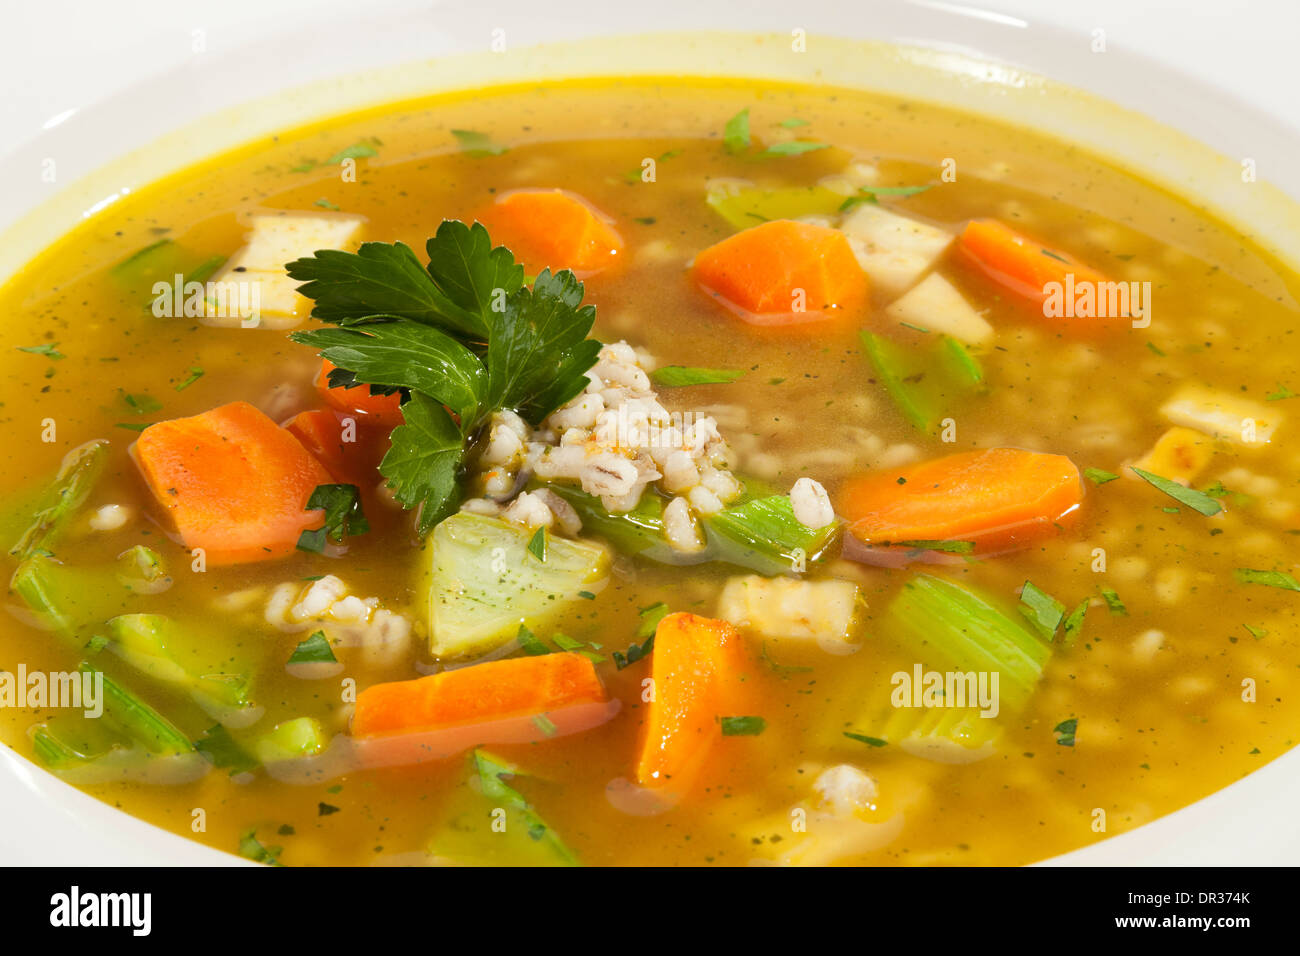 Soupe de légumes avec la carotte, le poireau et céleri Banque D'Images